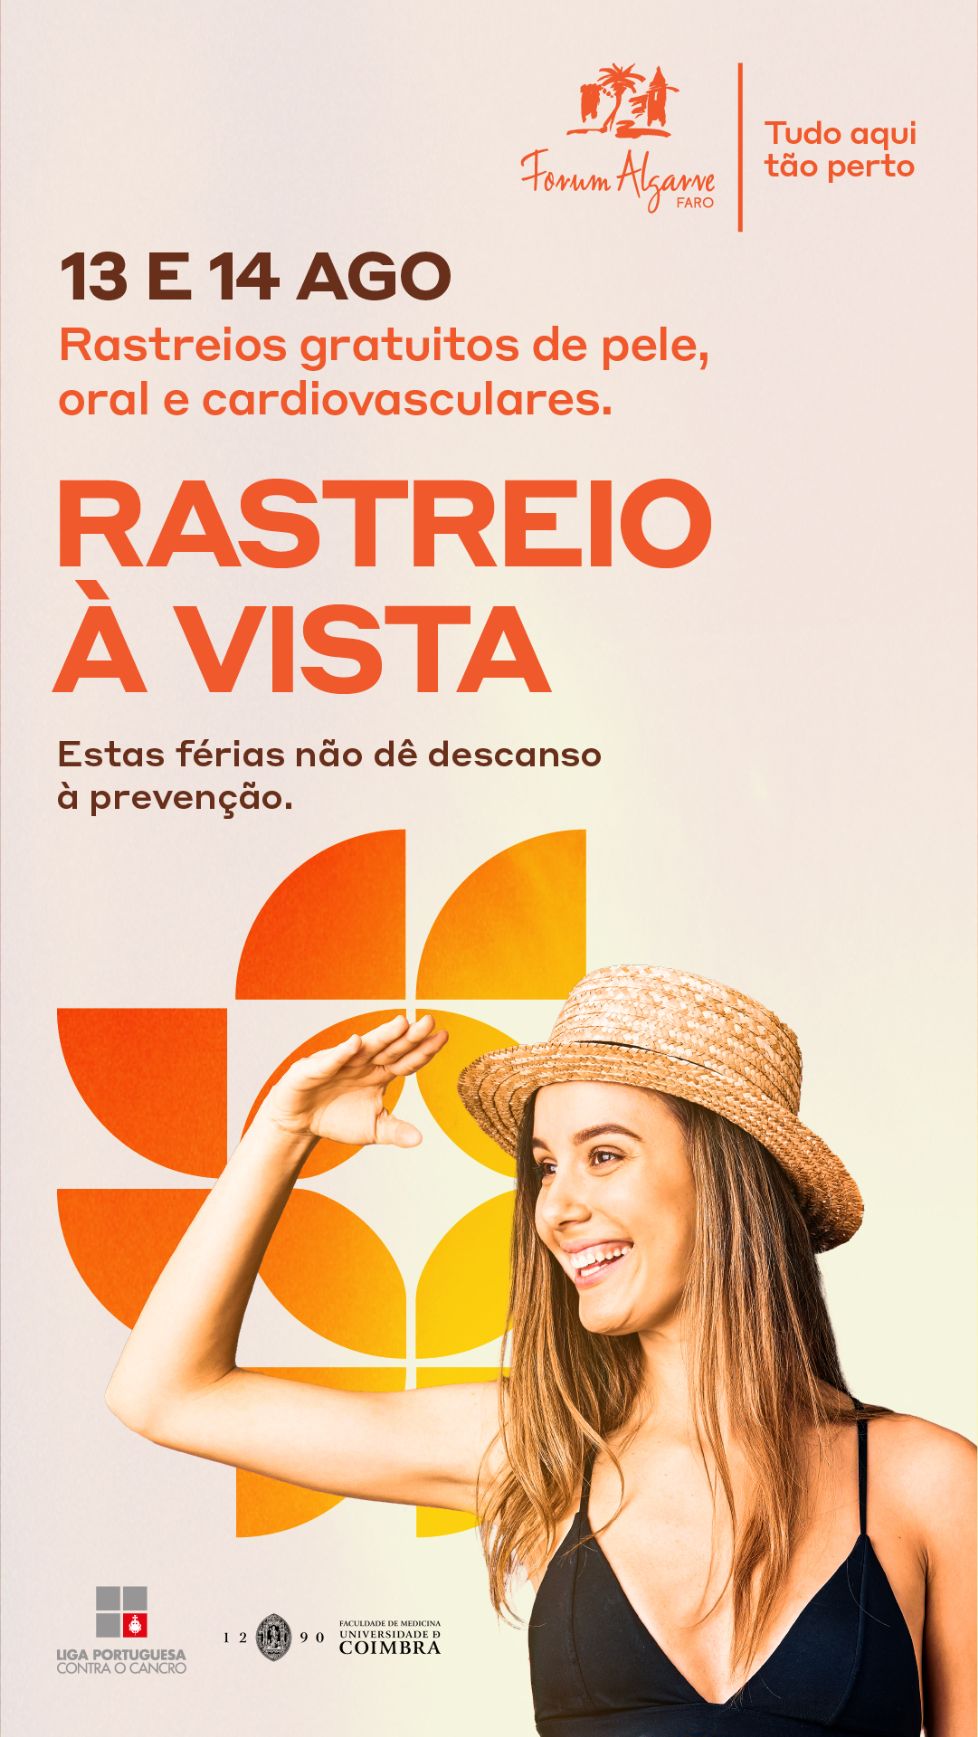 Liga Portuguesa contra o cancro e Forum Algarve juntos para fim-de-semana de rastreios gratuitos